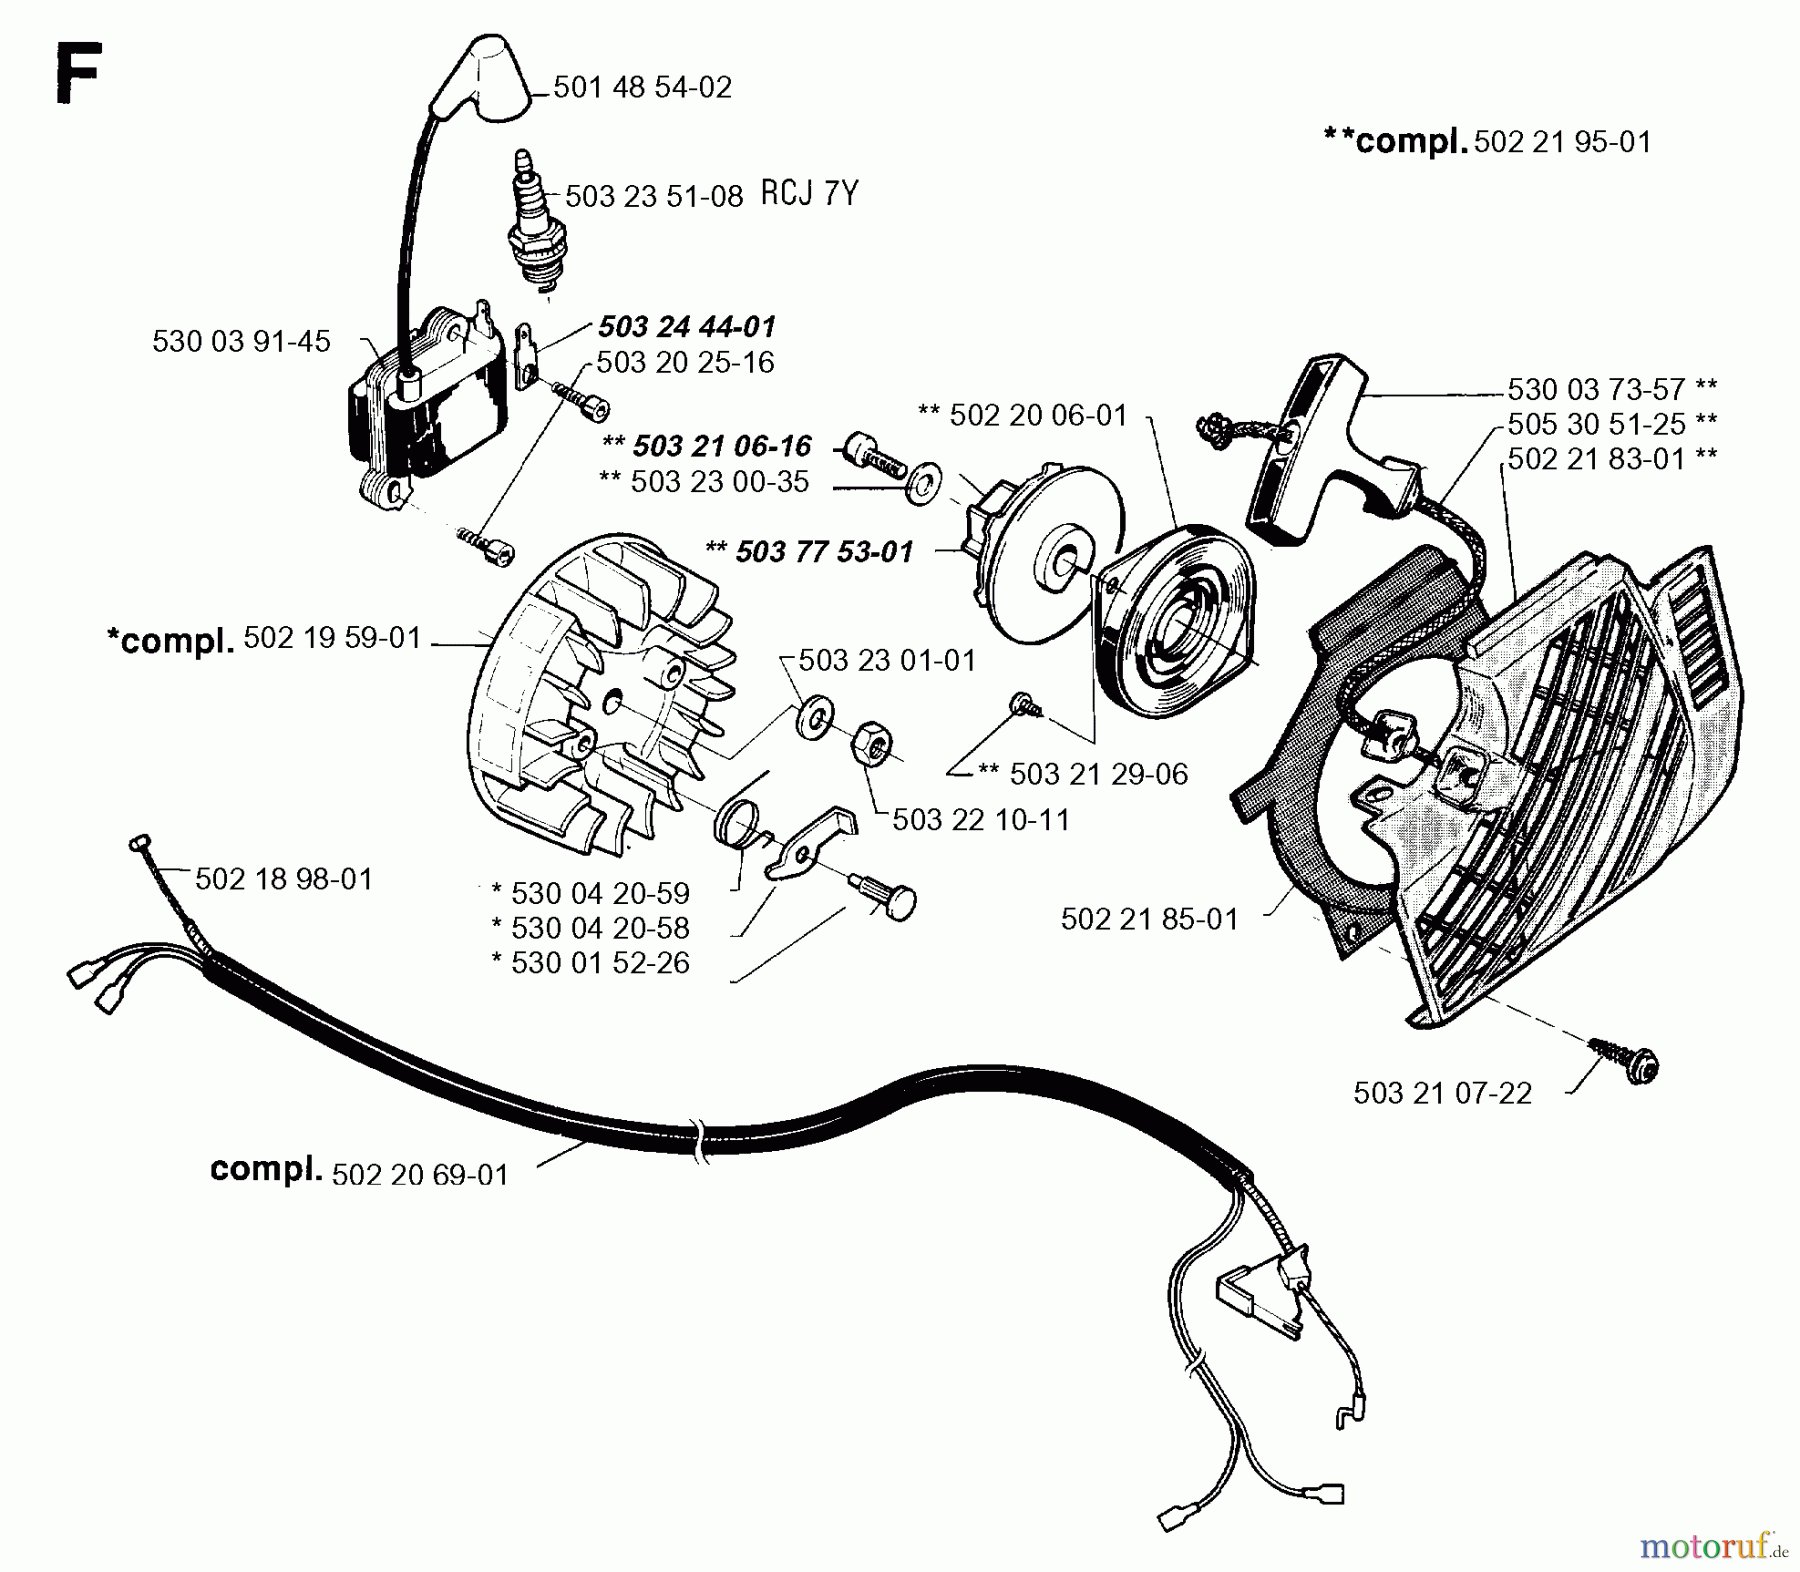  Jonsered Motorsensen, Trimmer GR36 - Jonsered String/Brush Trimmer (1995-01) STARTER